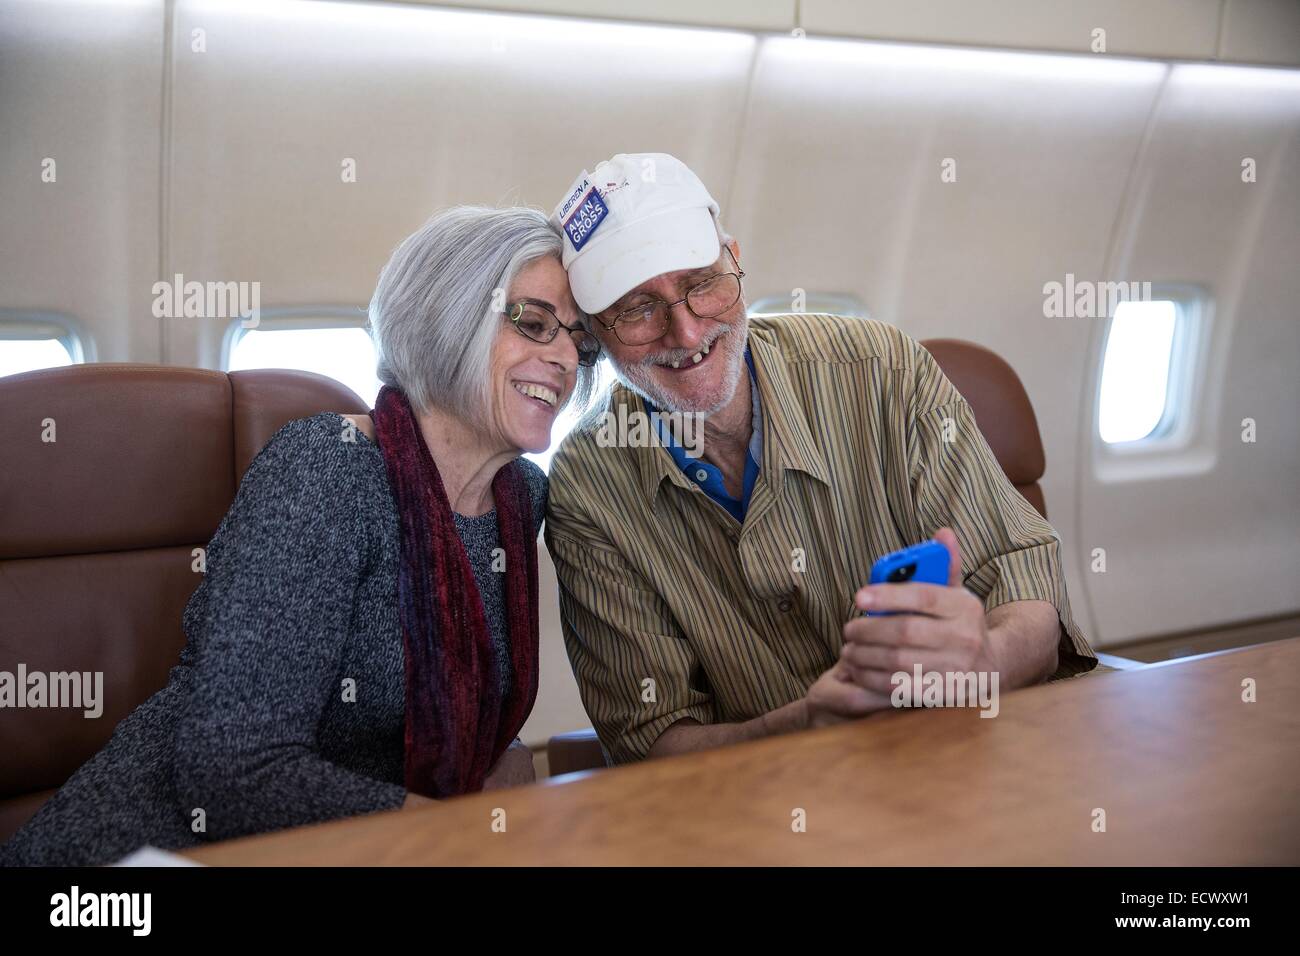 USAID Auftragnehmer Alan Gross, in Kuba für fünf Jahre ins Gefängnis bringt ein Selbstporträt mit seiner Frau Judy an Bord das Flugzeug eine Regierung unter der Leitung zurück nach Washington nach seiner Freilassung 17. Dezember 2014 in der Nähe von Havanna, Kuba. Stockfoto